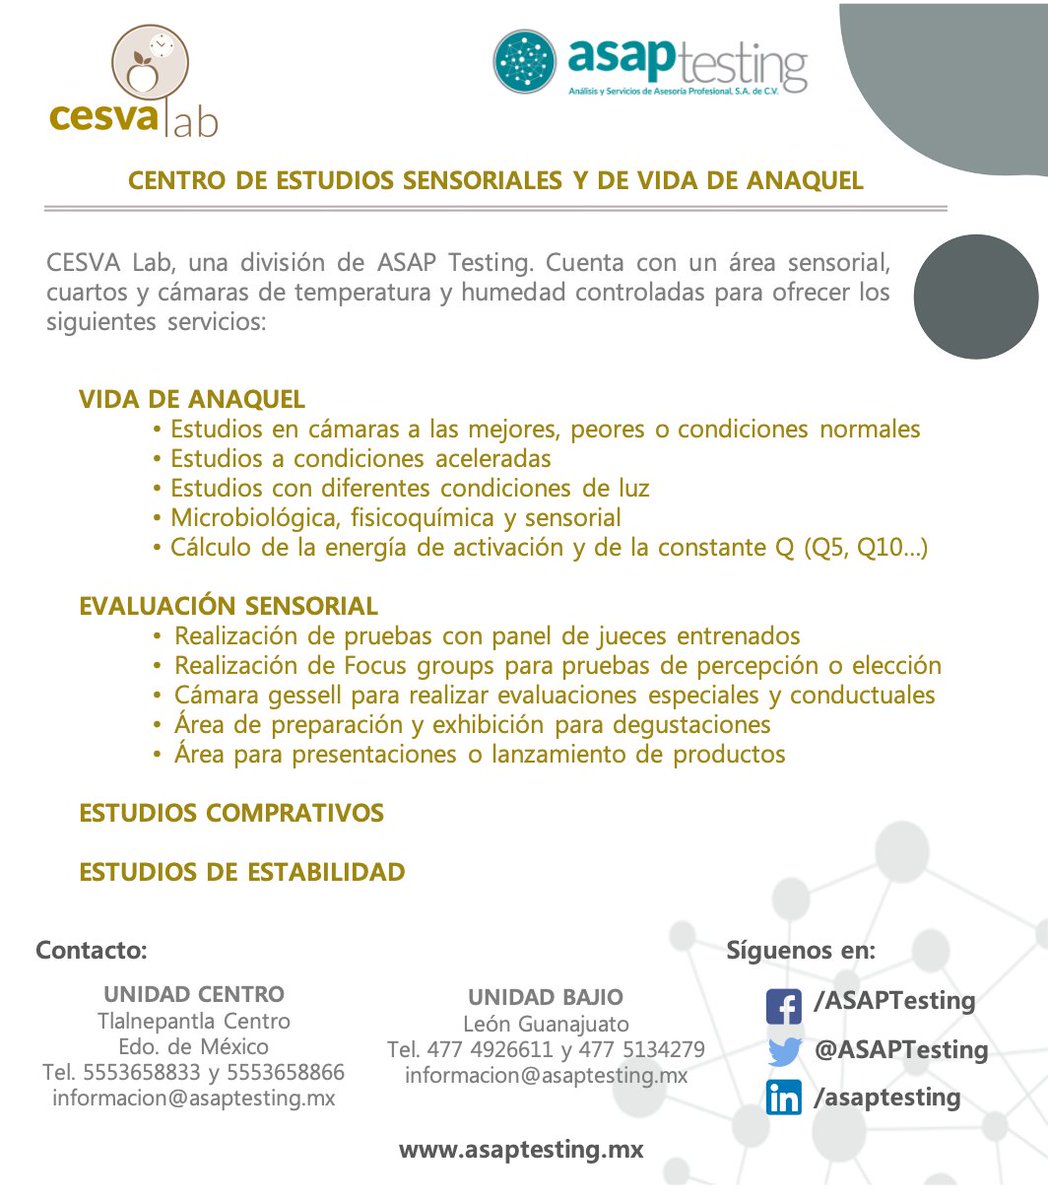 CESVA Lab una división de ASAP Testing, te presentamos nuestros servicios:
#VidaDeAnaquel #EvaluaciónSensorial #EstudiosComparativos #EstudiosDeEstabilidad